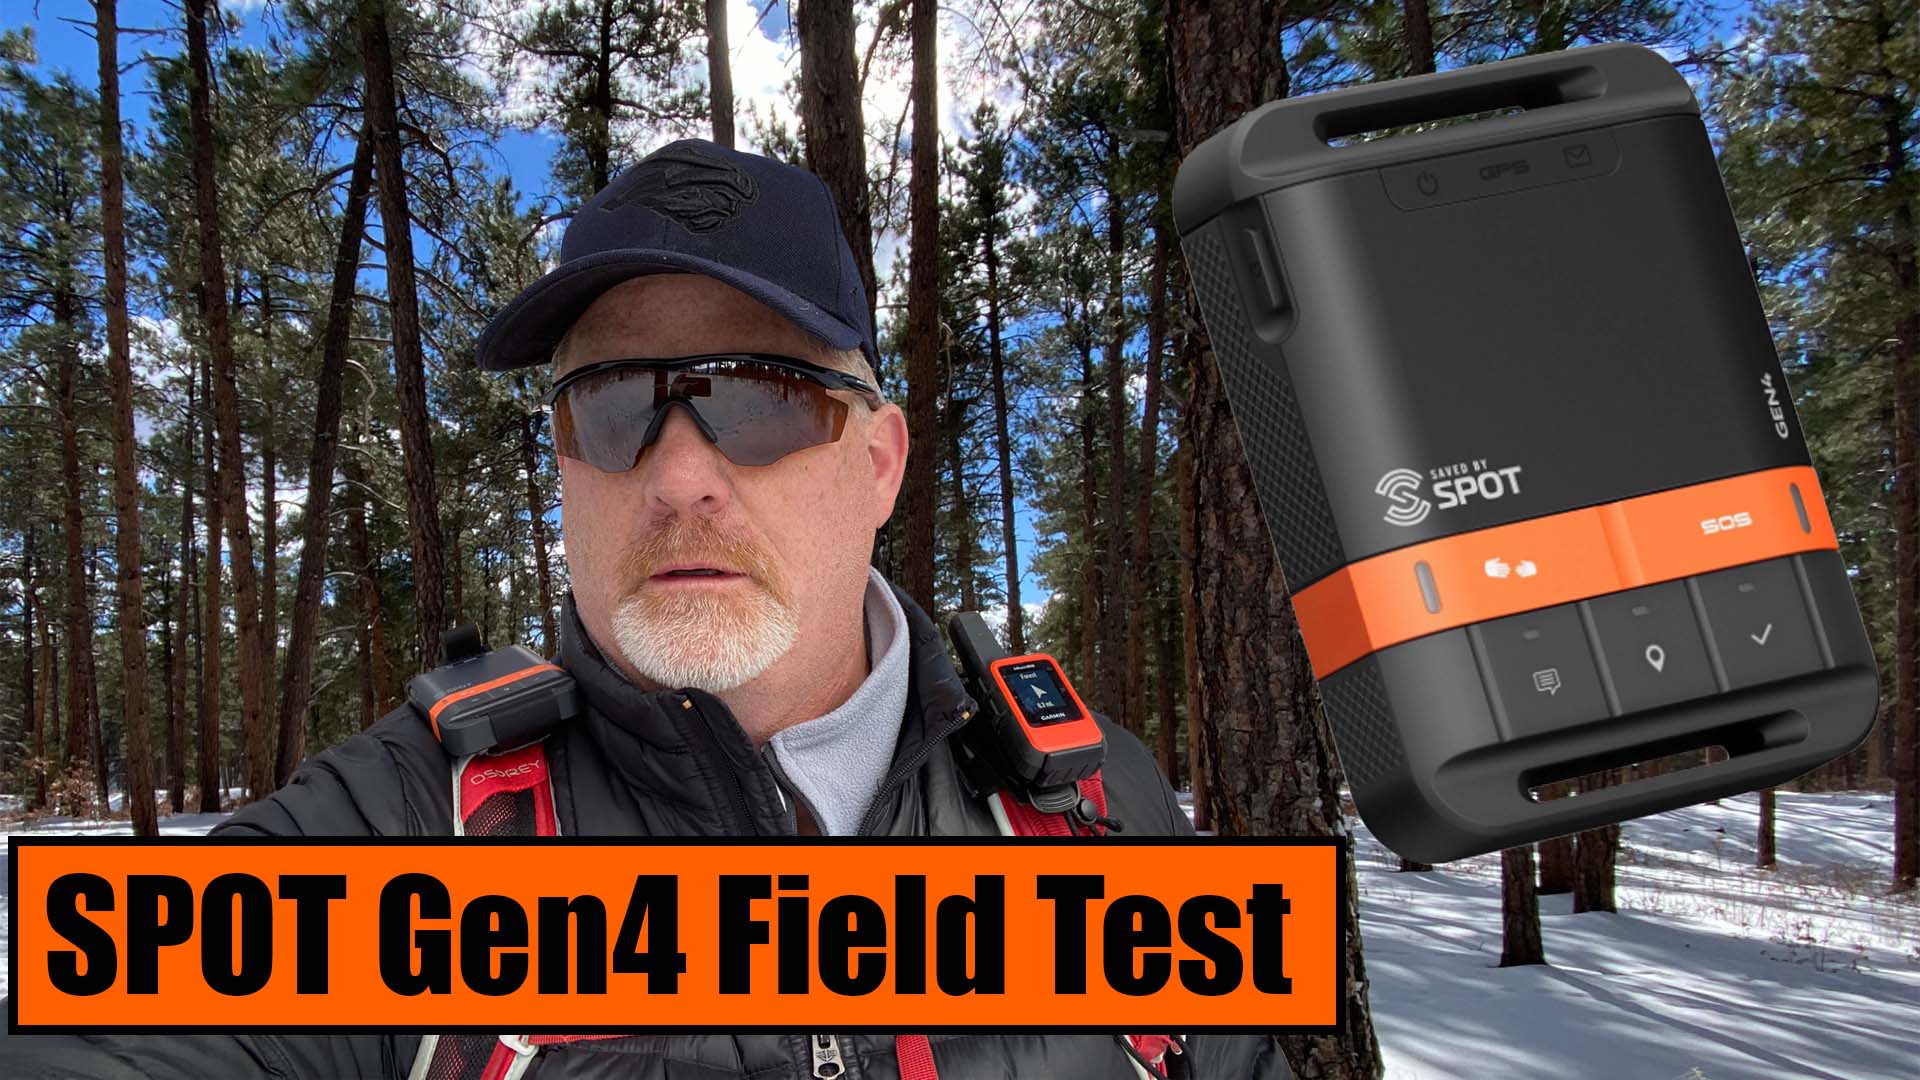 SPOT Gen 4 Review & Field Test